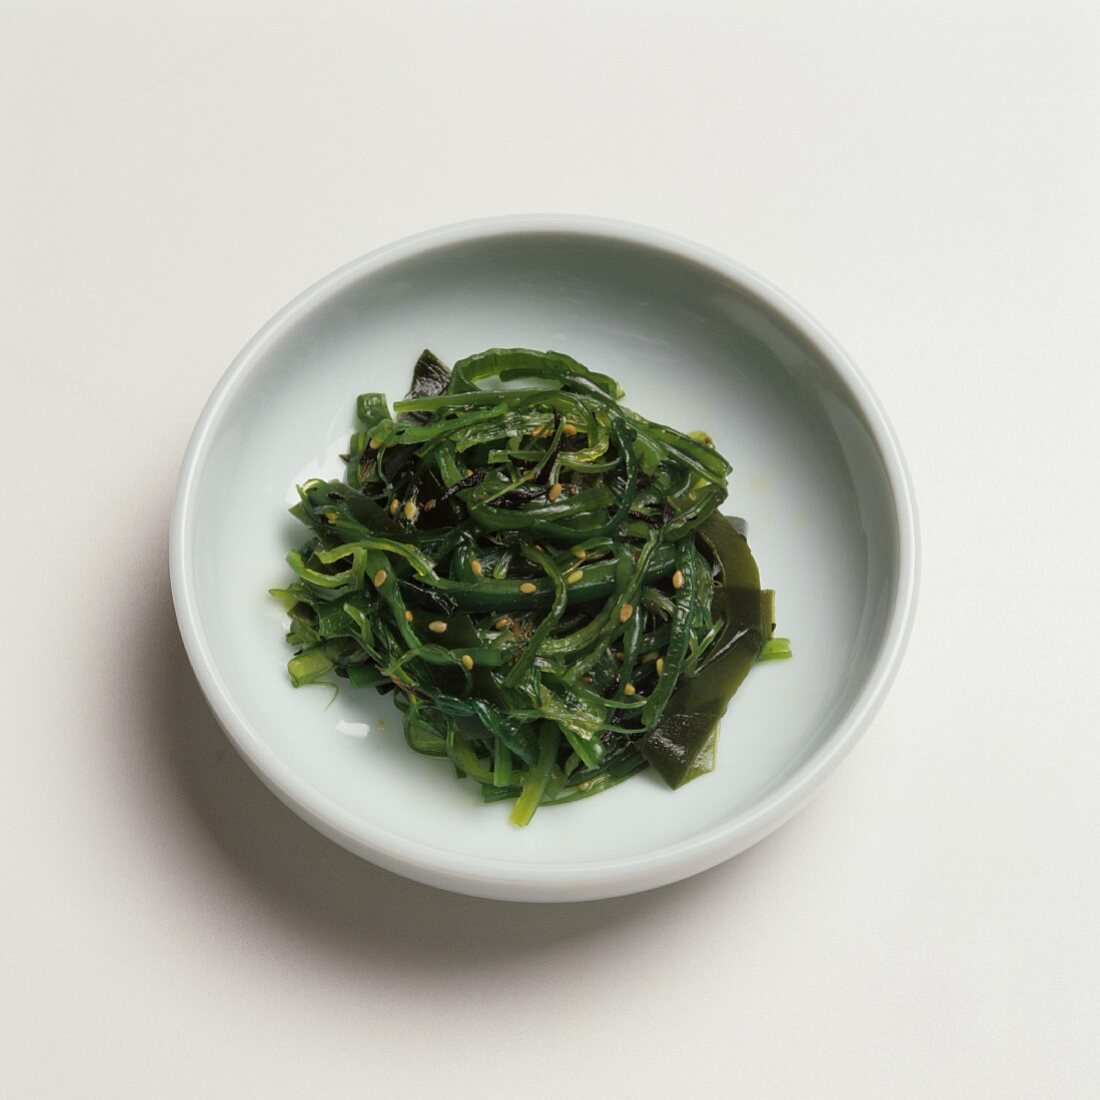 Plate of Seasoned Seaweed